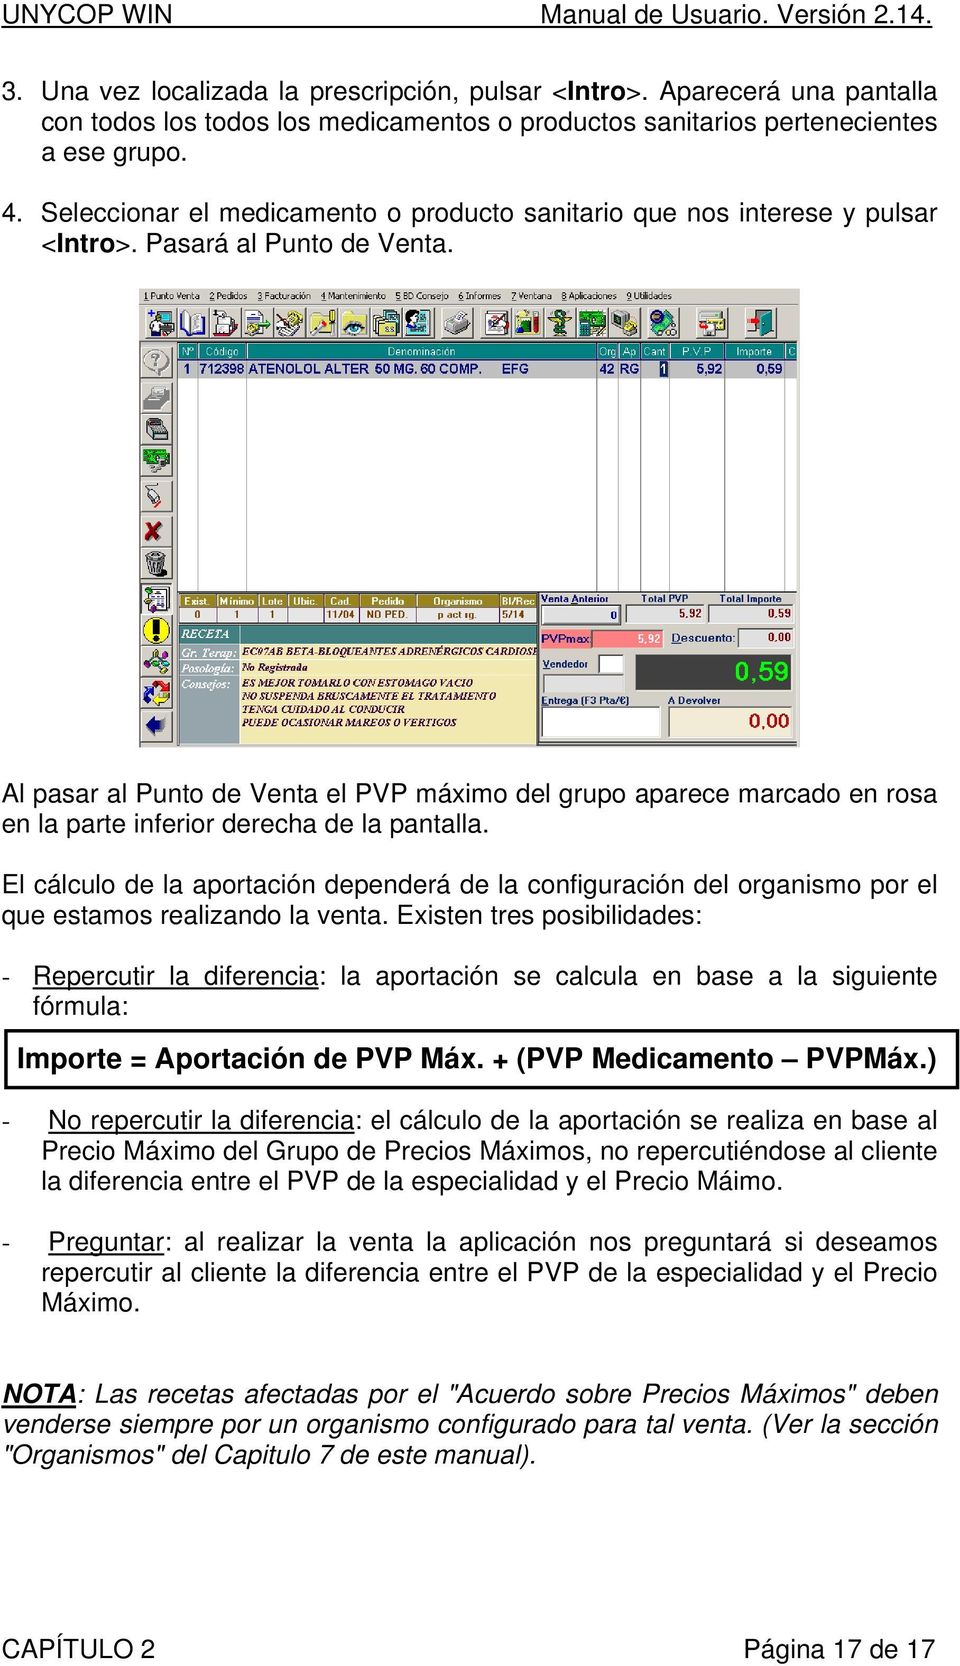 Al pasar al Punto de Venta el PVP máximo del grupo aparece marcado en rosa en la parte inferior derecha de la pantalla.